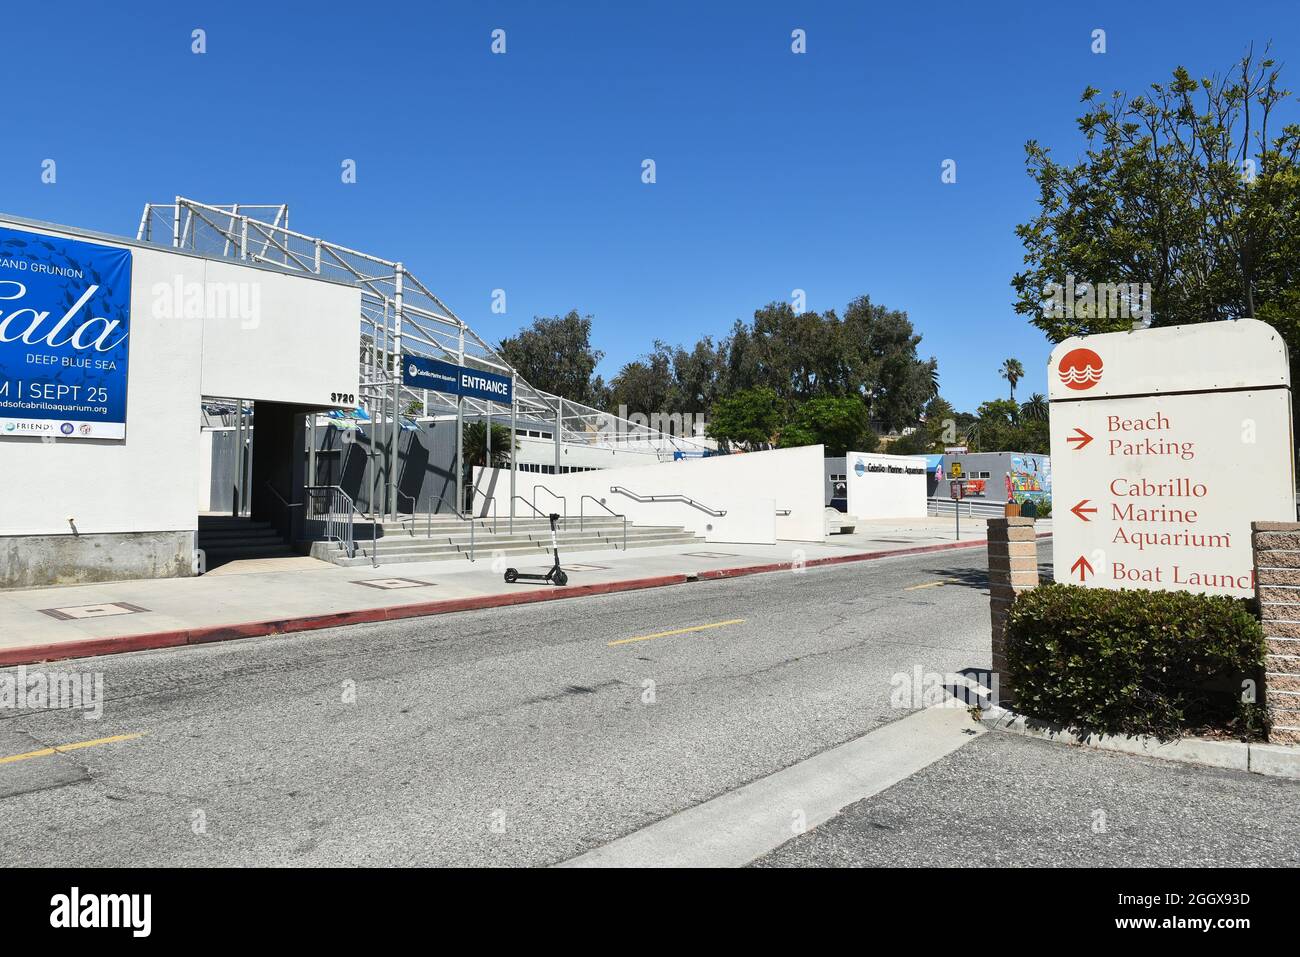 SAN PEDRO, CALIFORNIE - 27 AOÛT 2021 : le panneau de l'aquarium marin Cabrillo et du parking. Banque D'Images